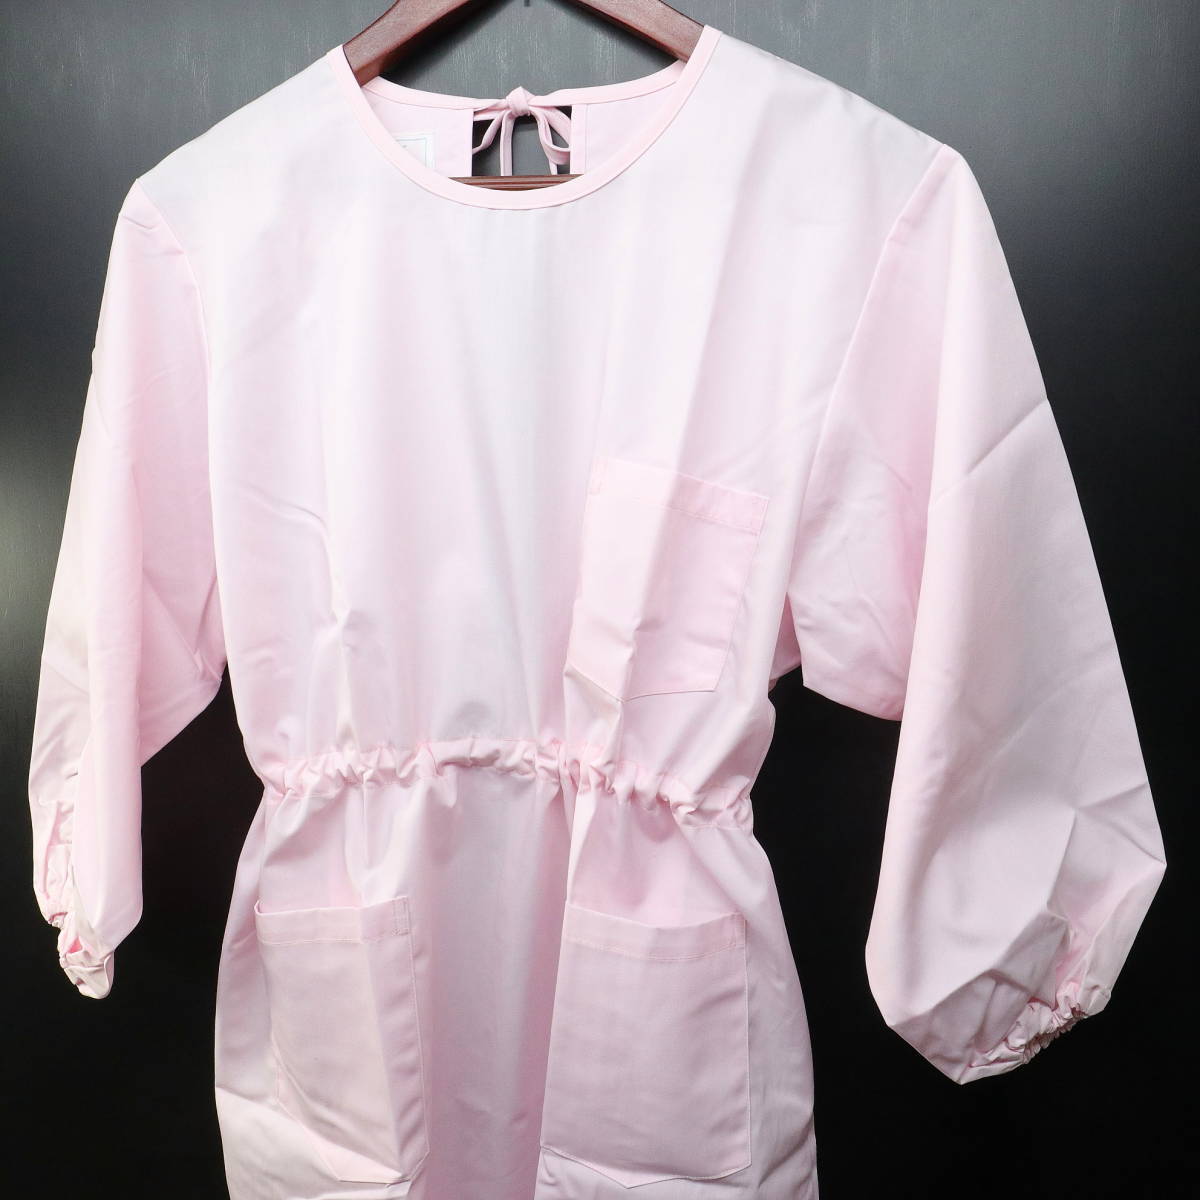 ◆モンブラン◆男女兼用◆3Lサイズ◆袖付き 看護士エプロン 介護服 ピンク系◆予防衣 ナース ワンピース型_画像1